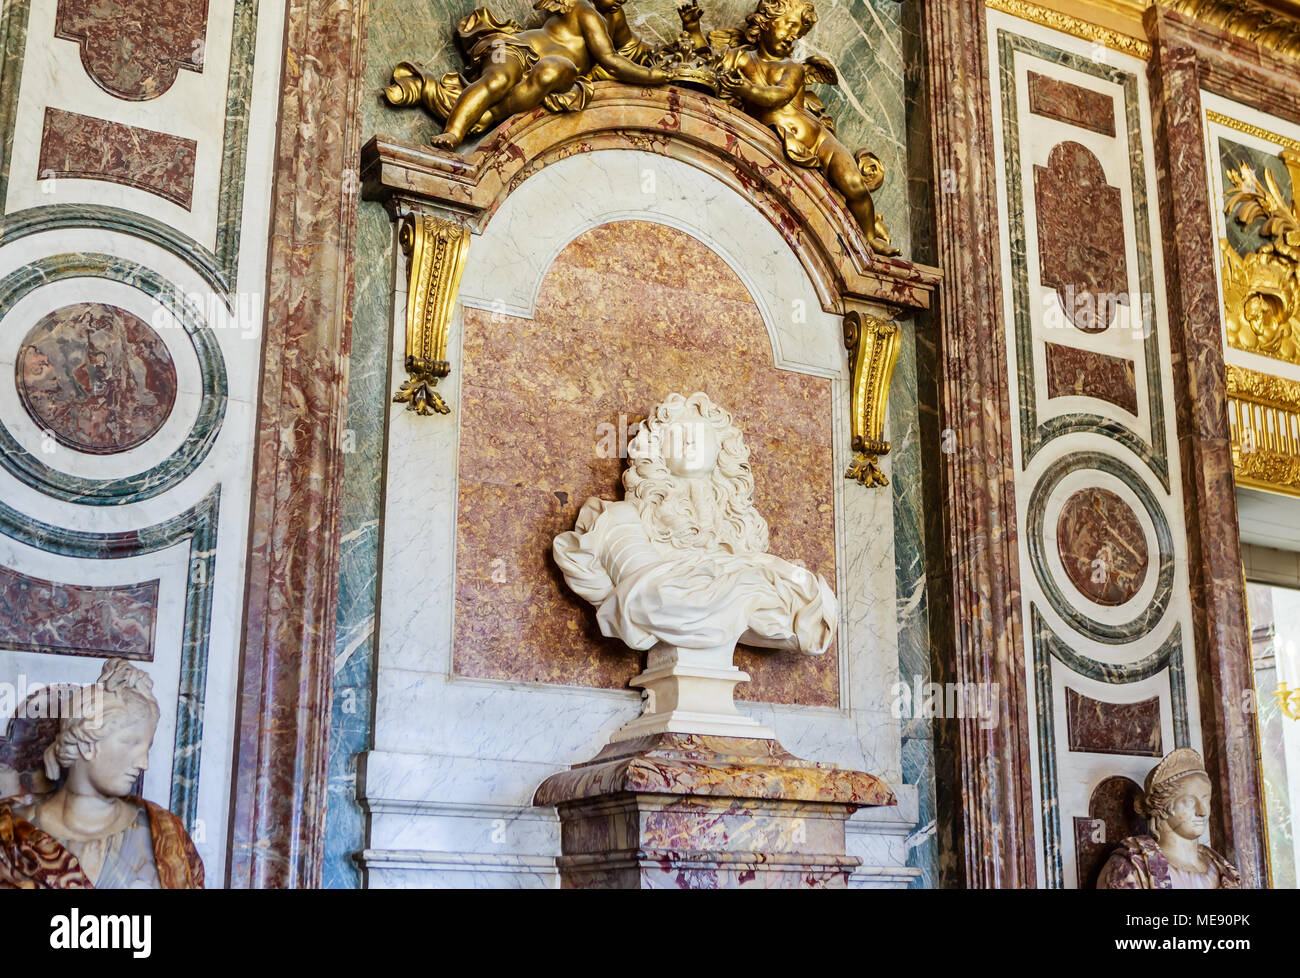 Busto di Luigi XIV da D. Bernini nel salone di Diana. Versailles. Francia, Europa Foto Stock